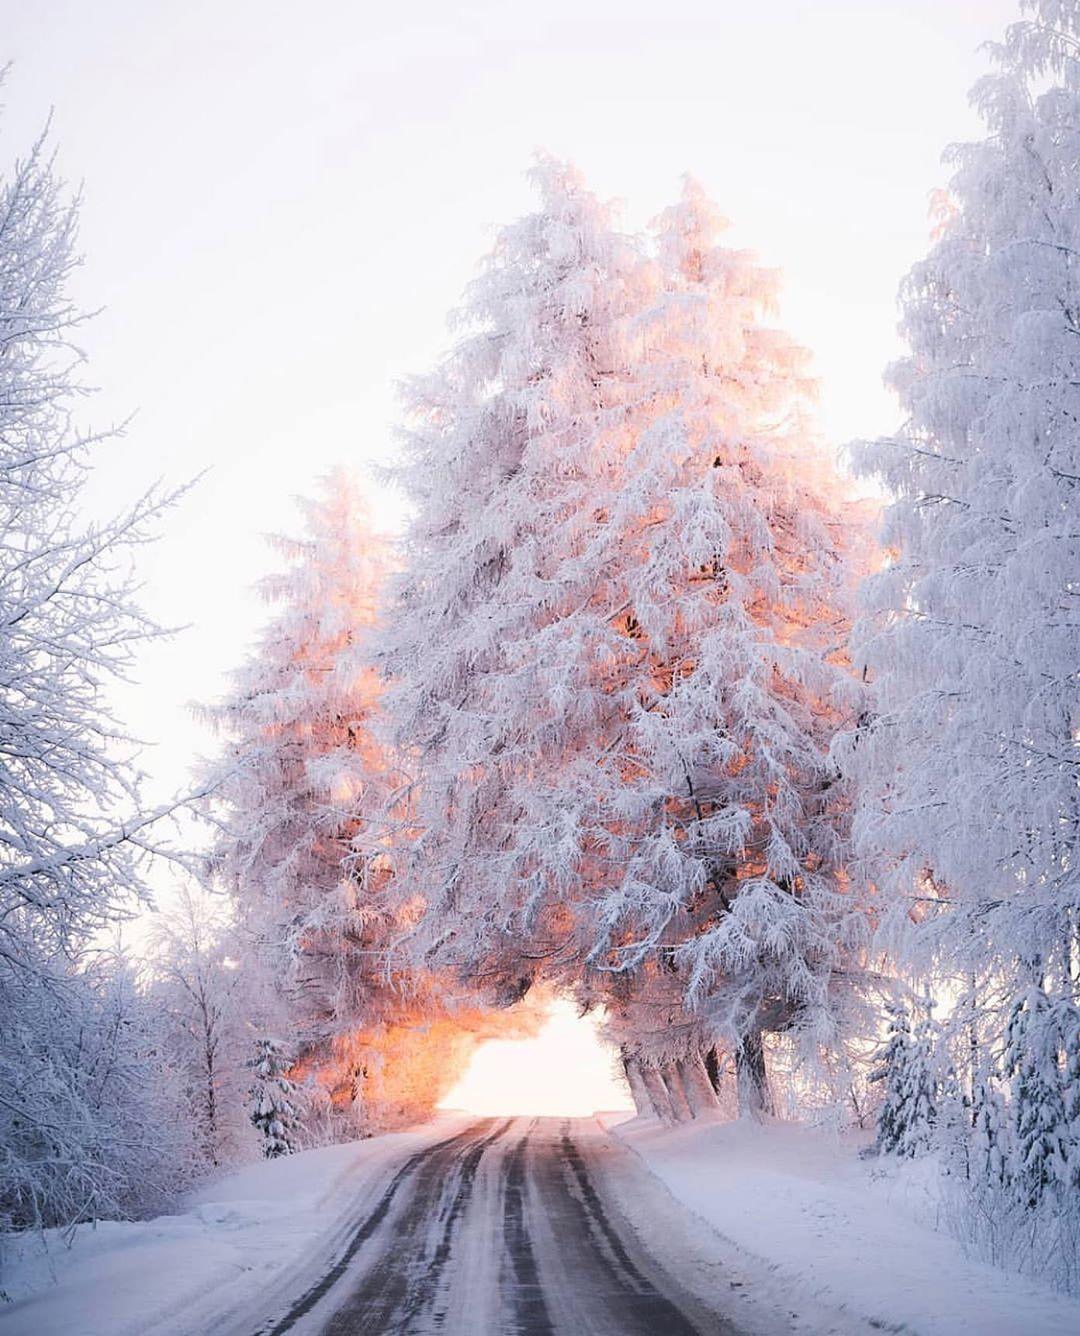  天堂之路，Jukka Paakkinen摄于芬兰。 